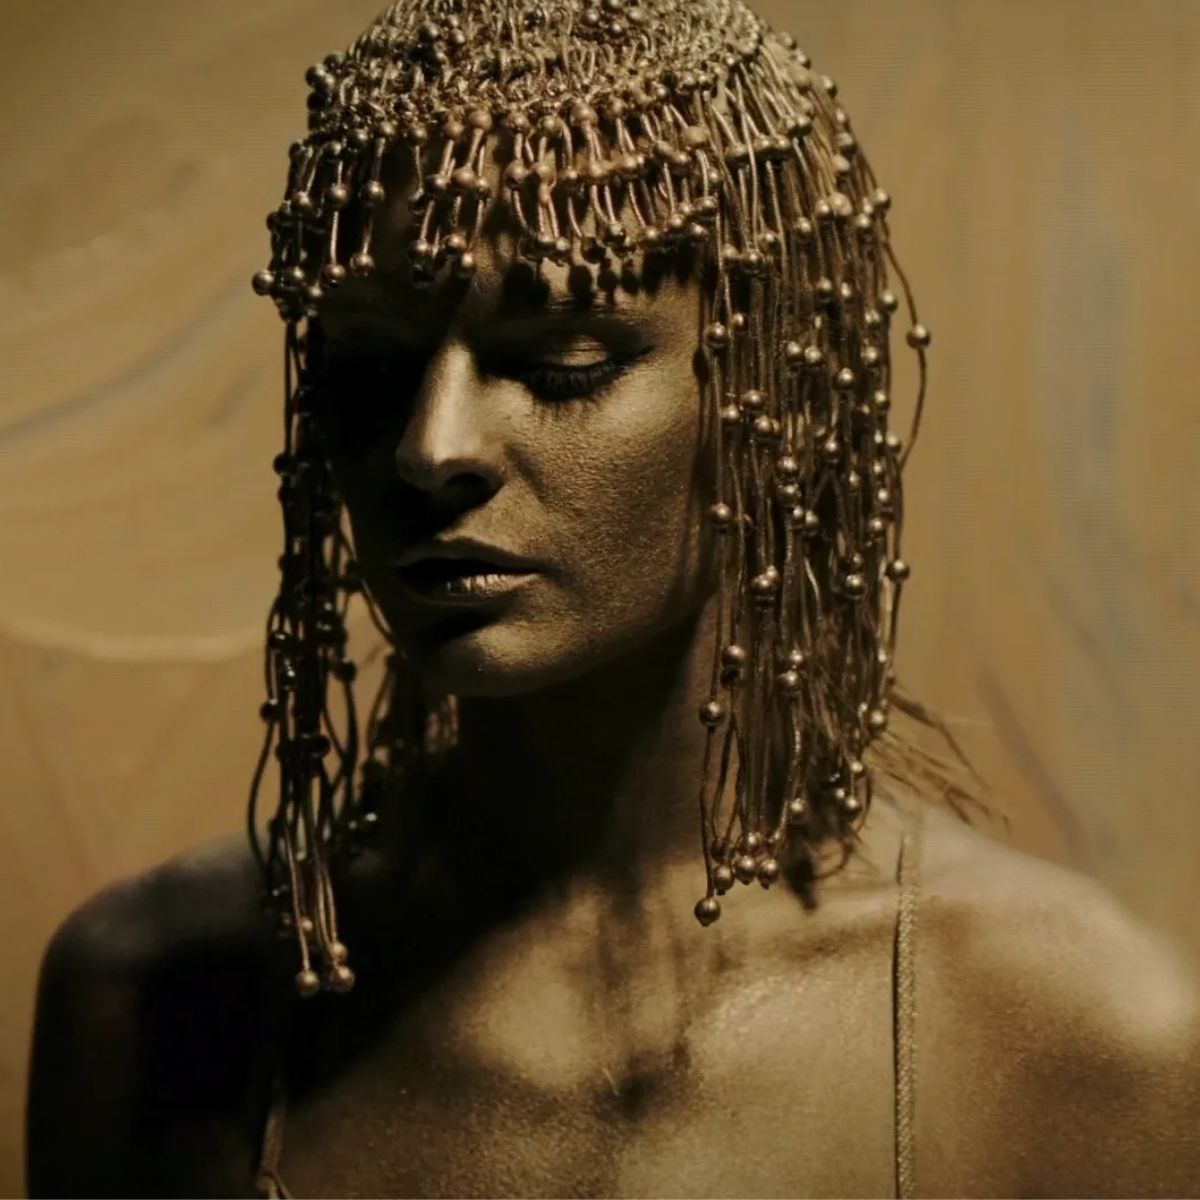 Bild der Sängerin Dolores O'Riordan für das Musikvideo zu "Zombie" von The Cranberries